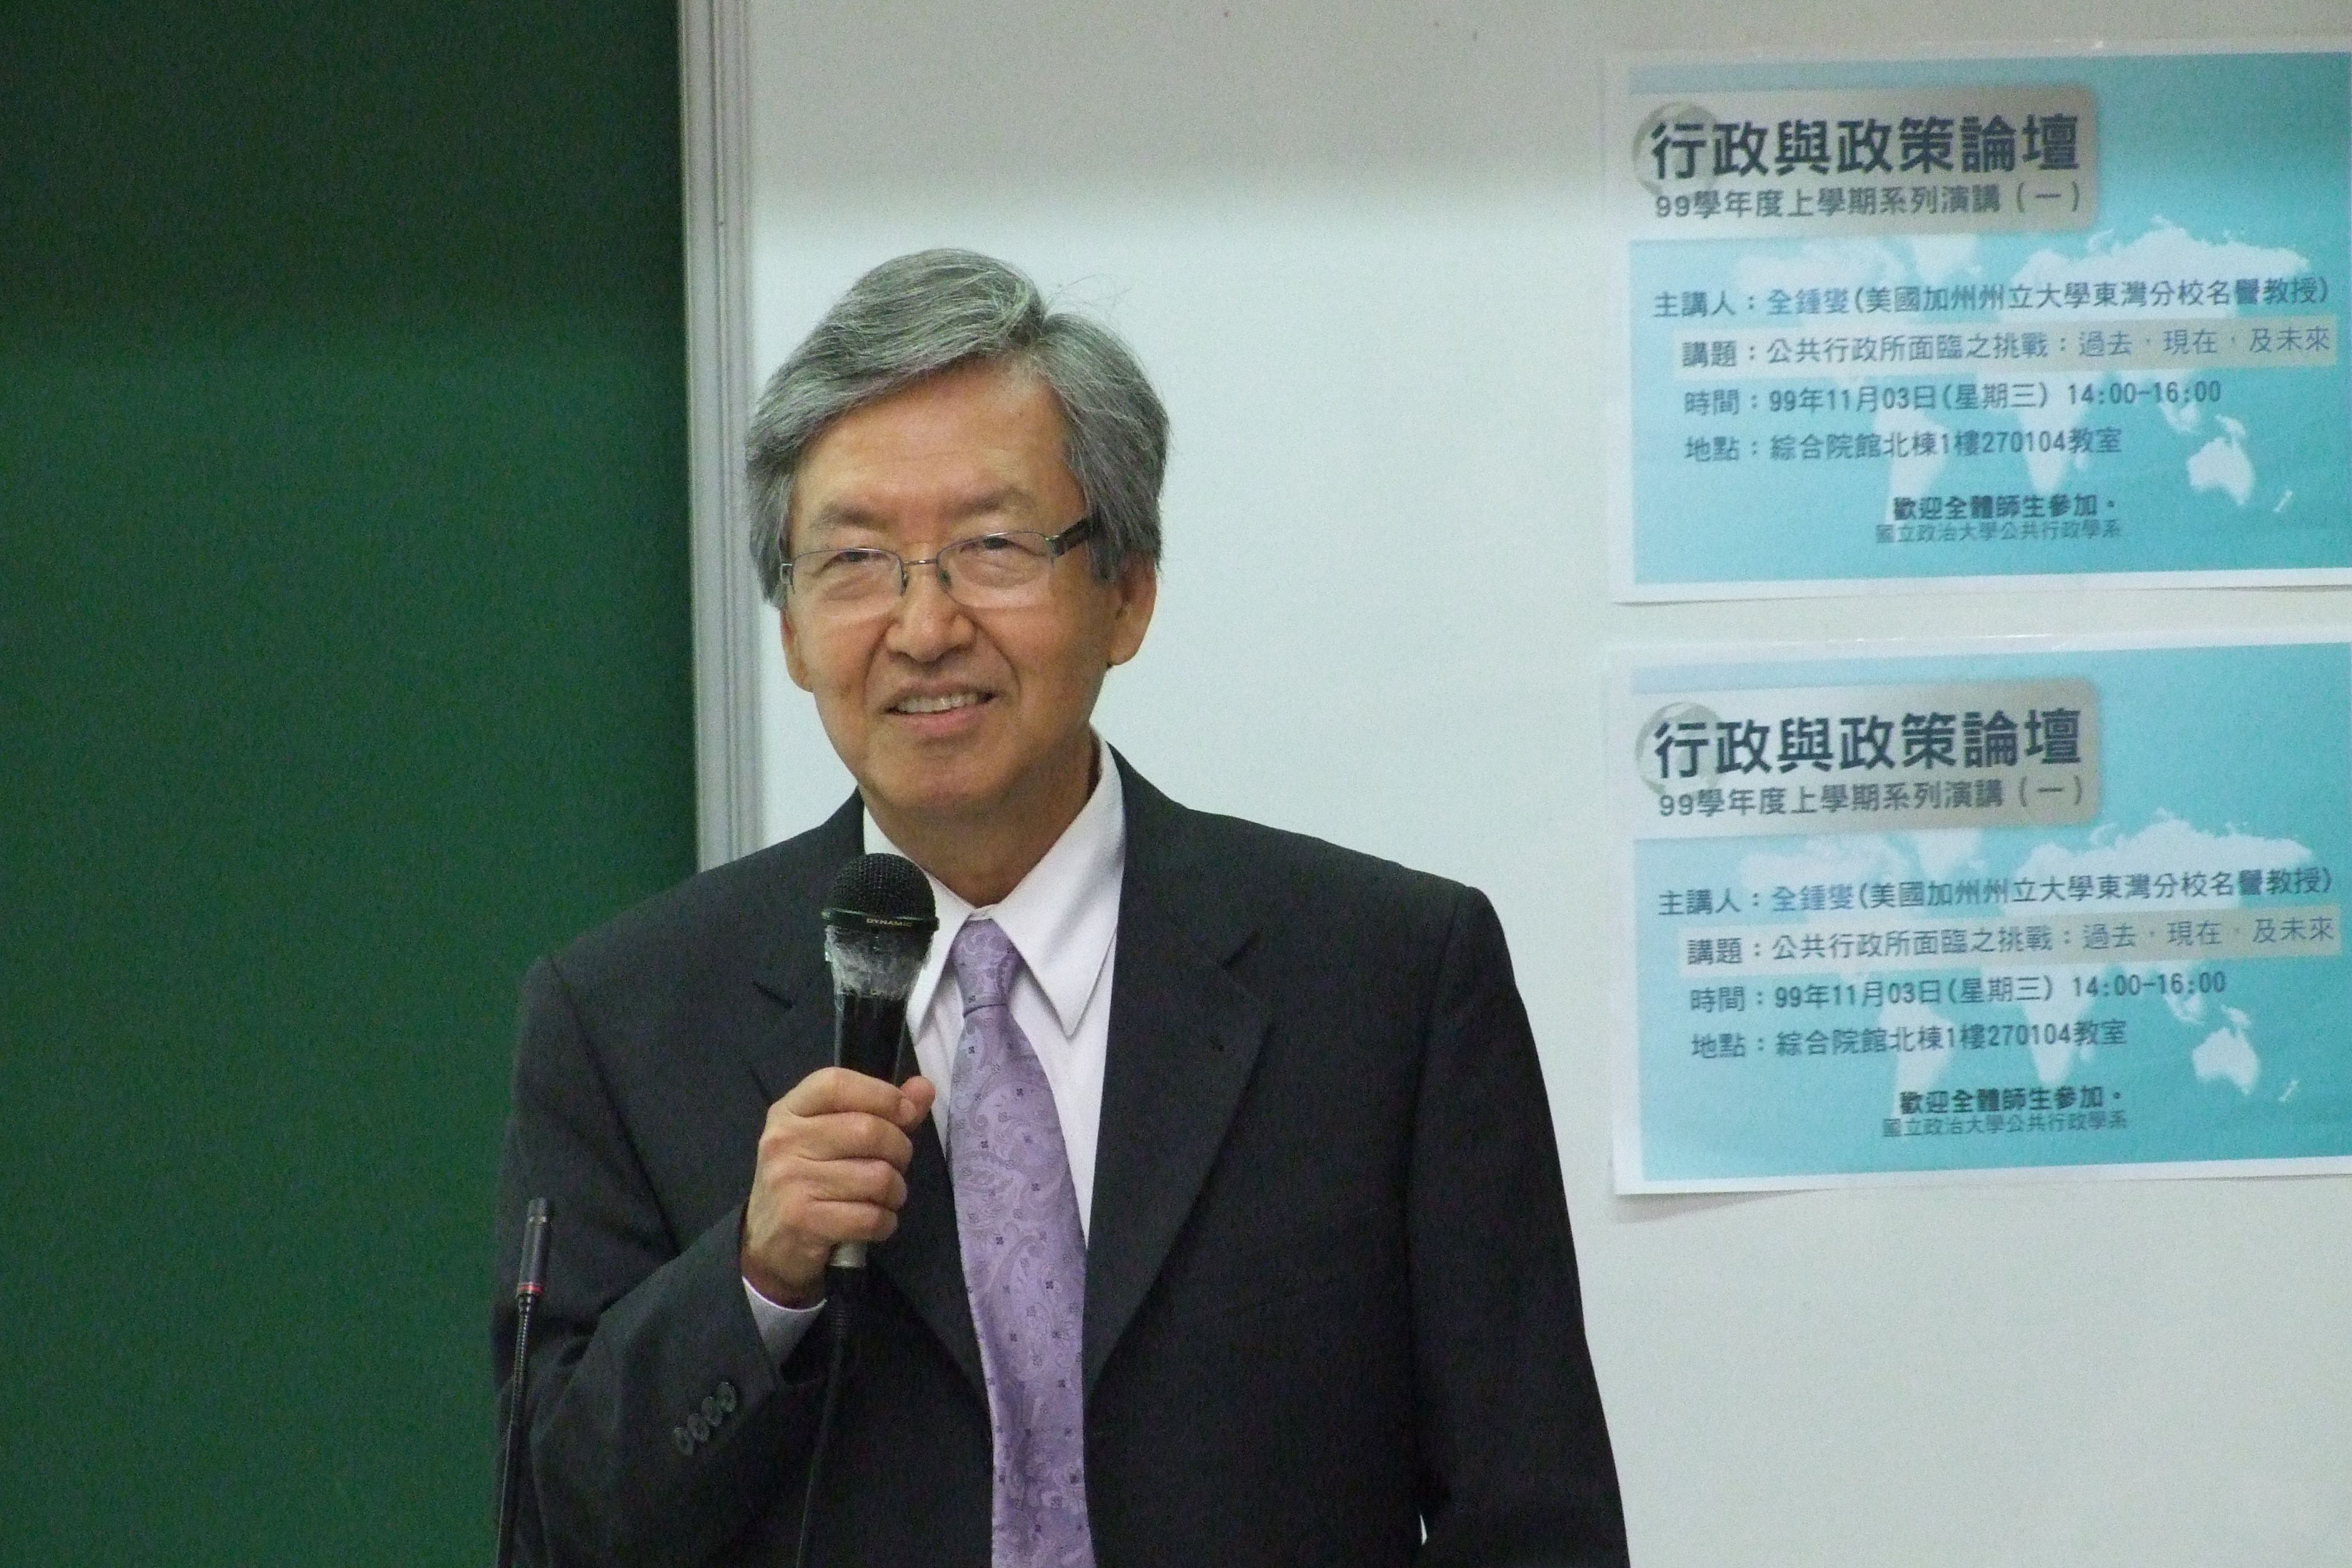 全鍾燮教授演講(2010/11/03)